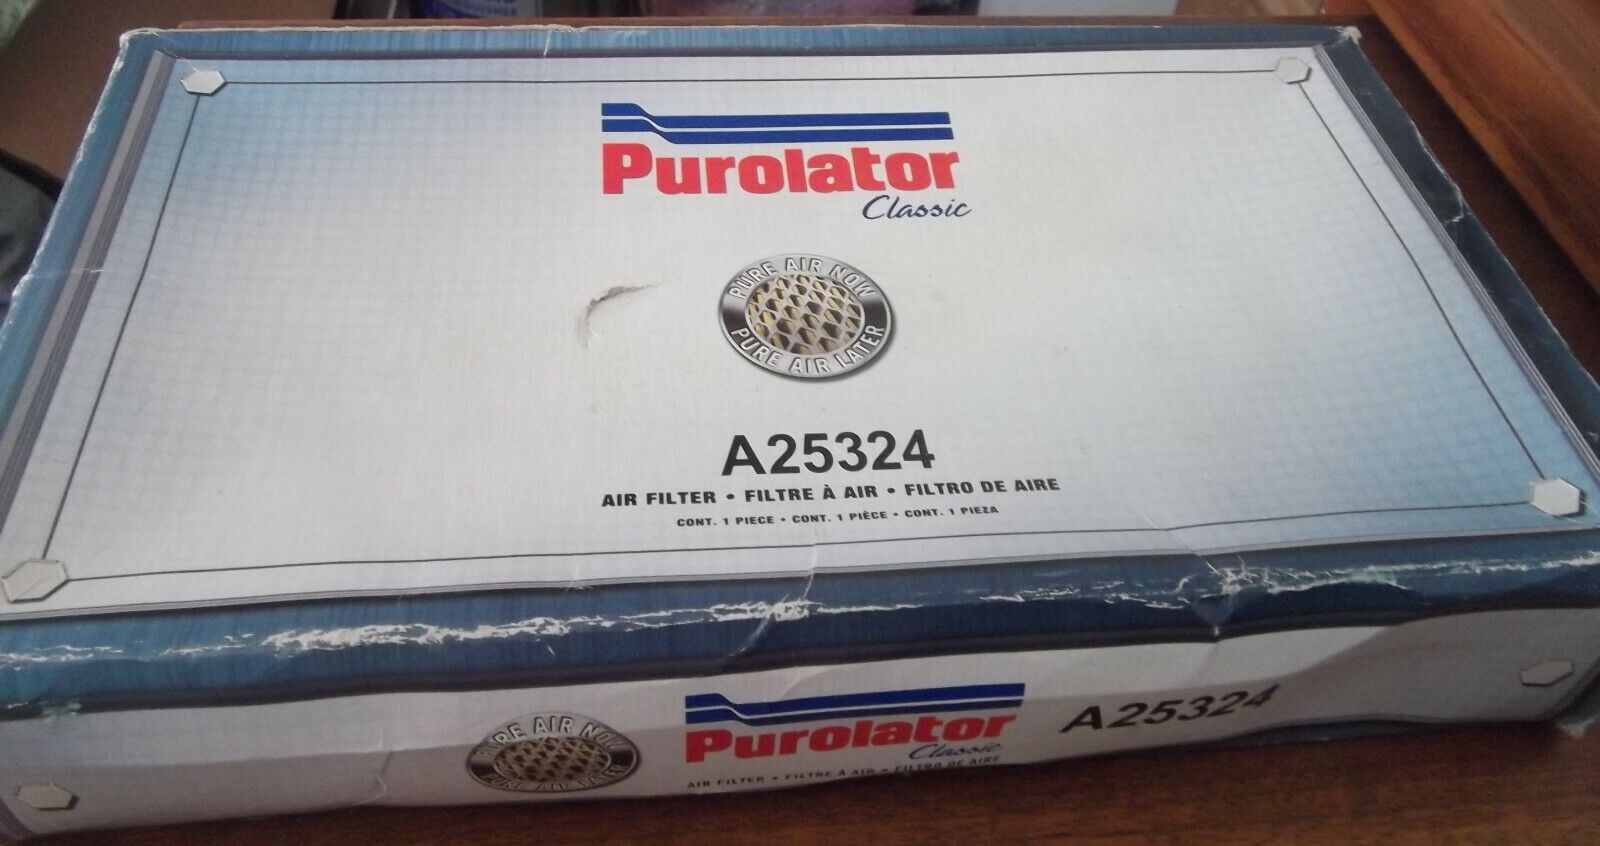 Purolator A25324 Classic Air Filter